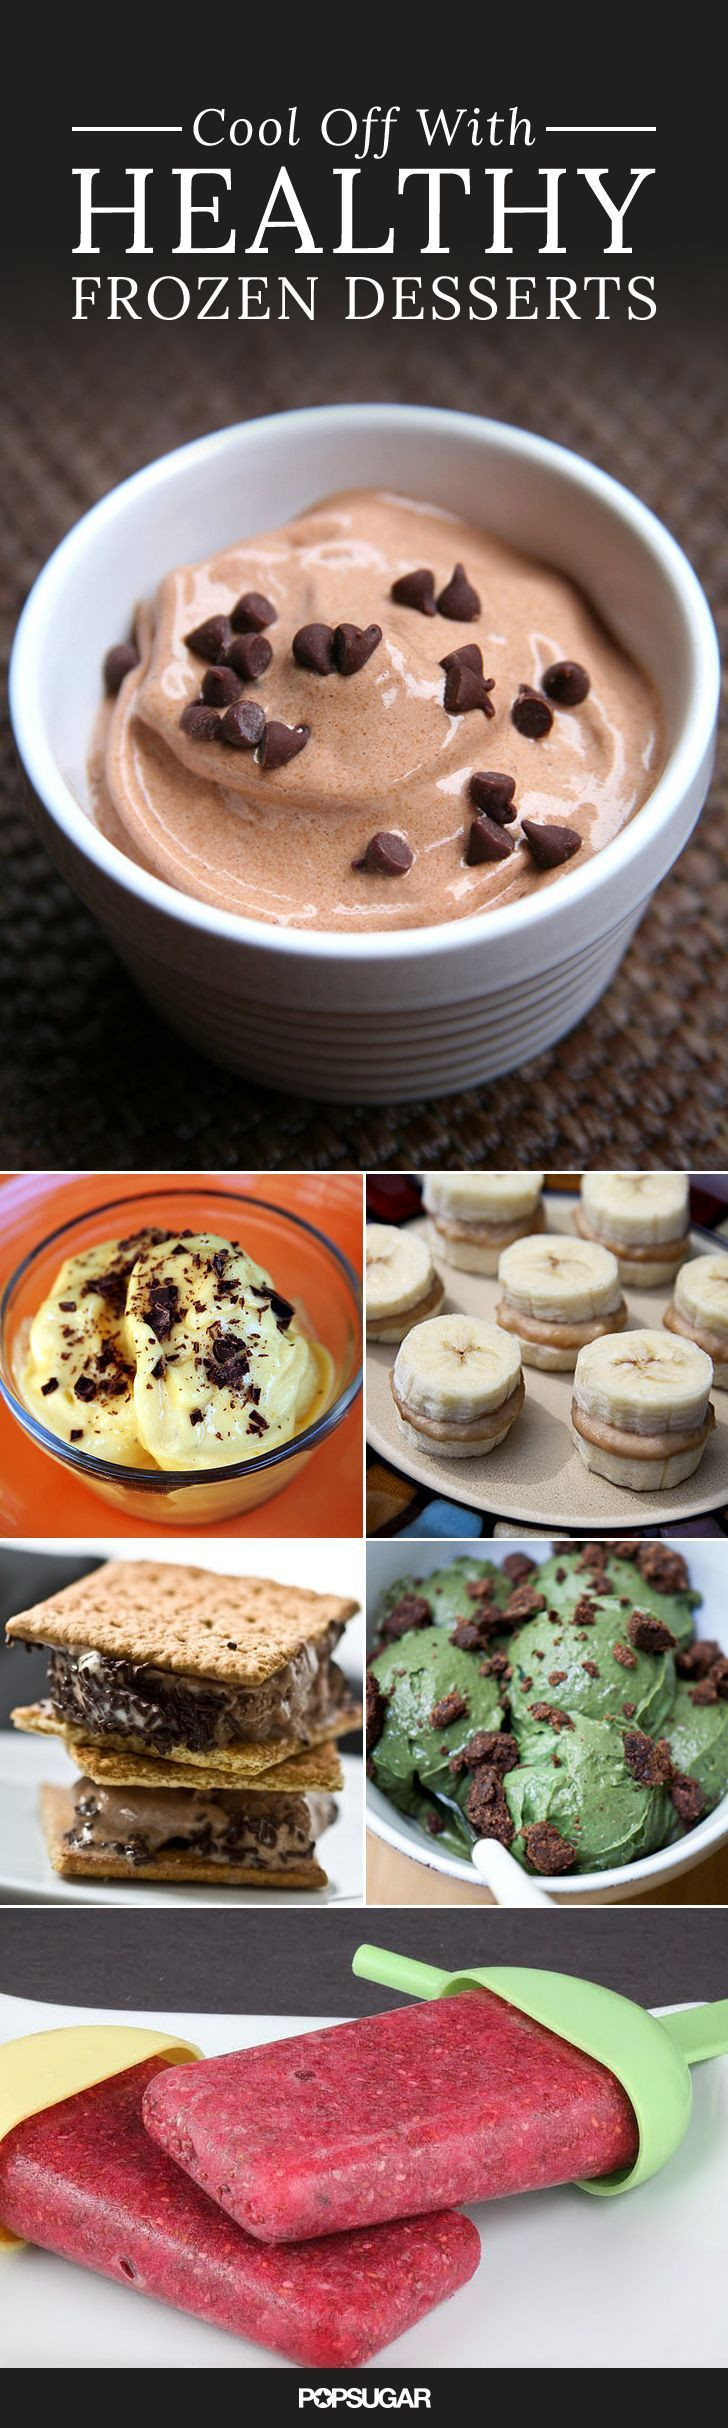 Healthy Dessert Alternatives
 Best 25 Frozen desserts ideas on Pinterest